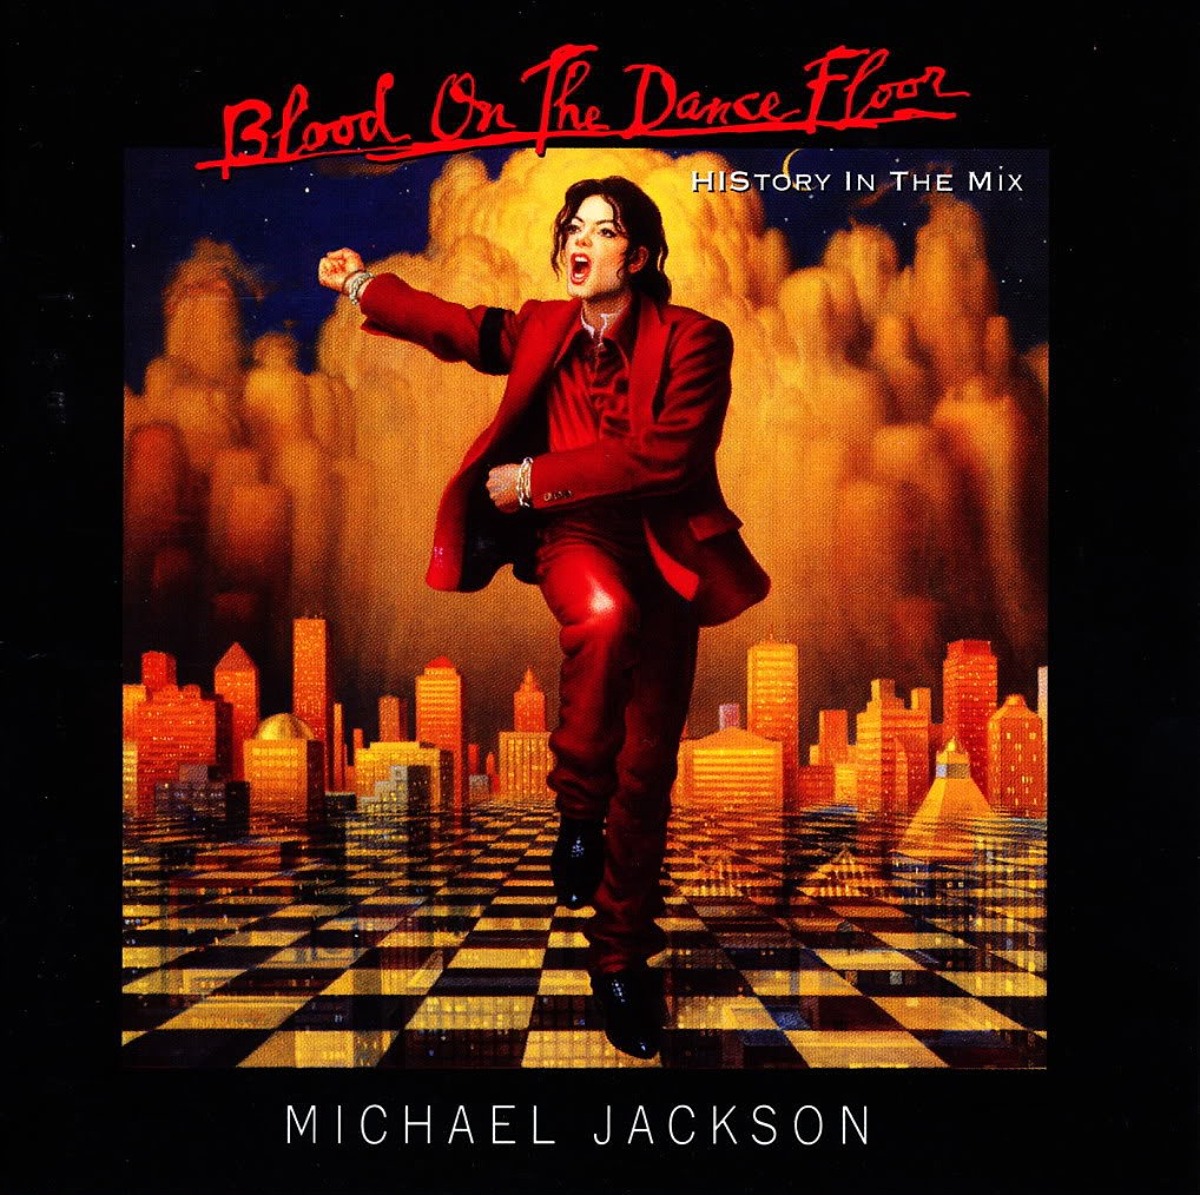 Couverture de l'album "Blood on the Dance Floor" de Michael Jackson